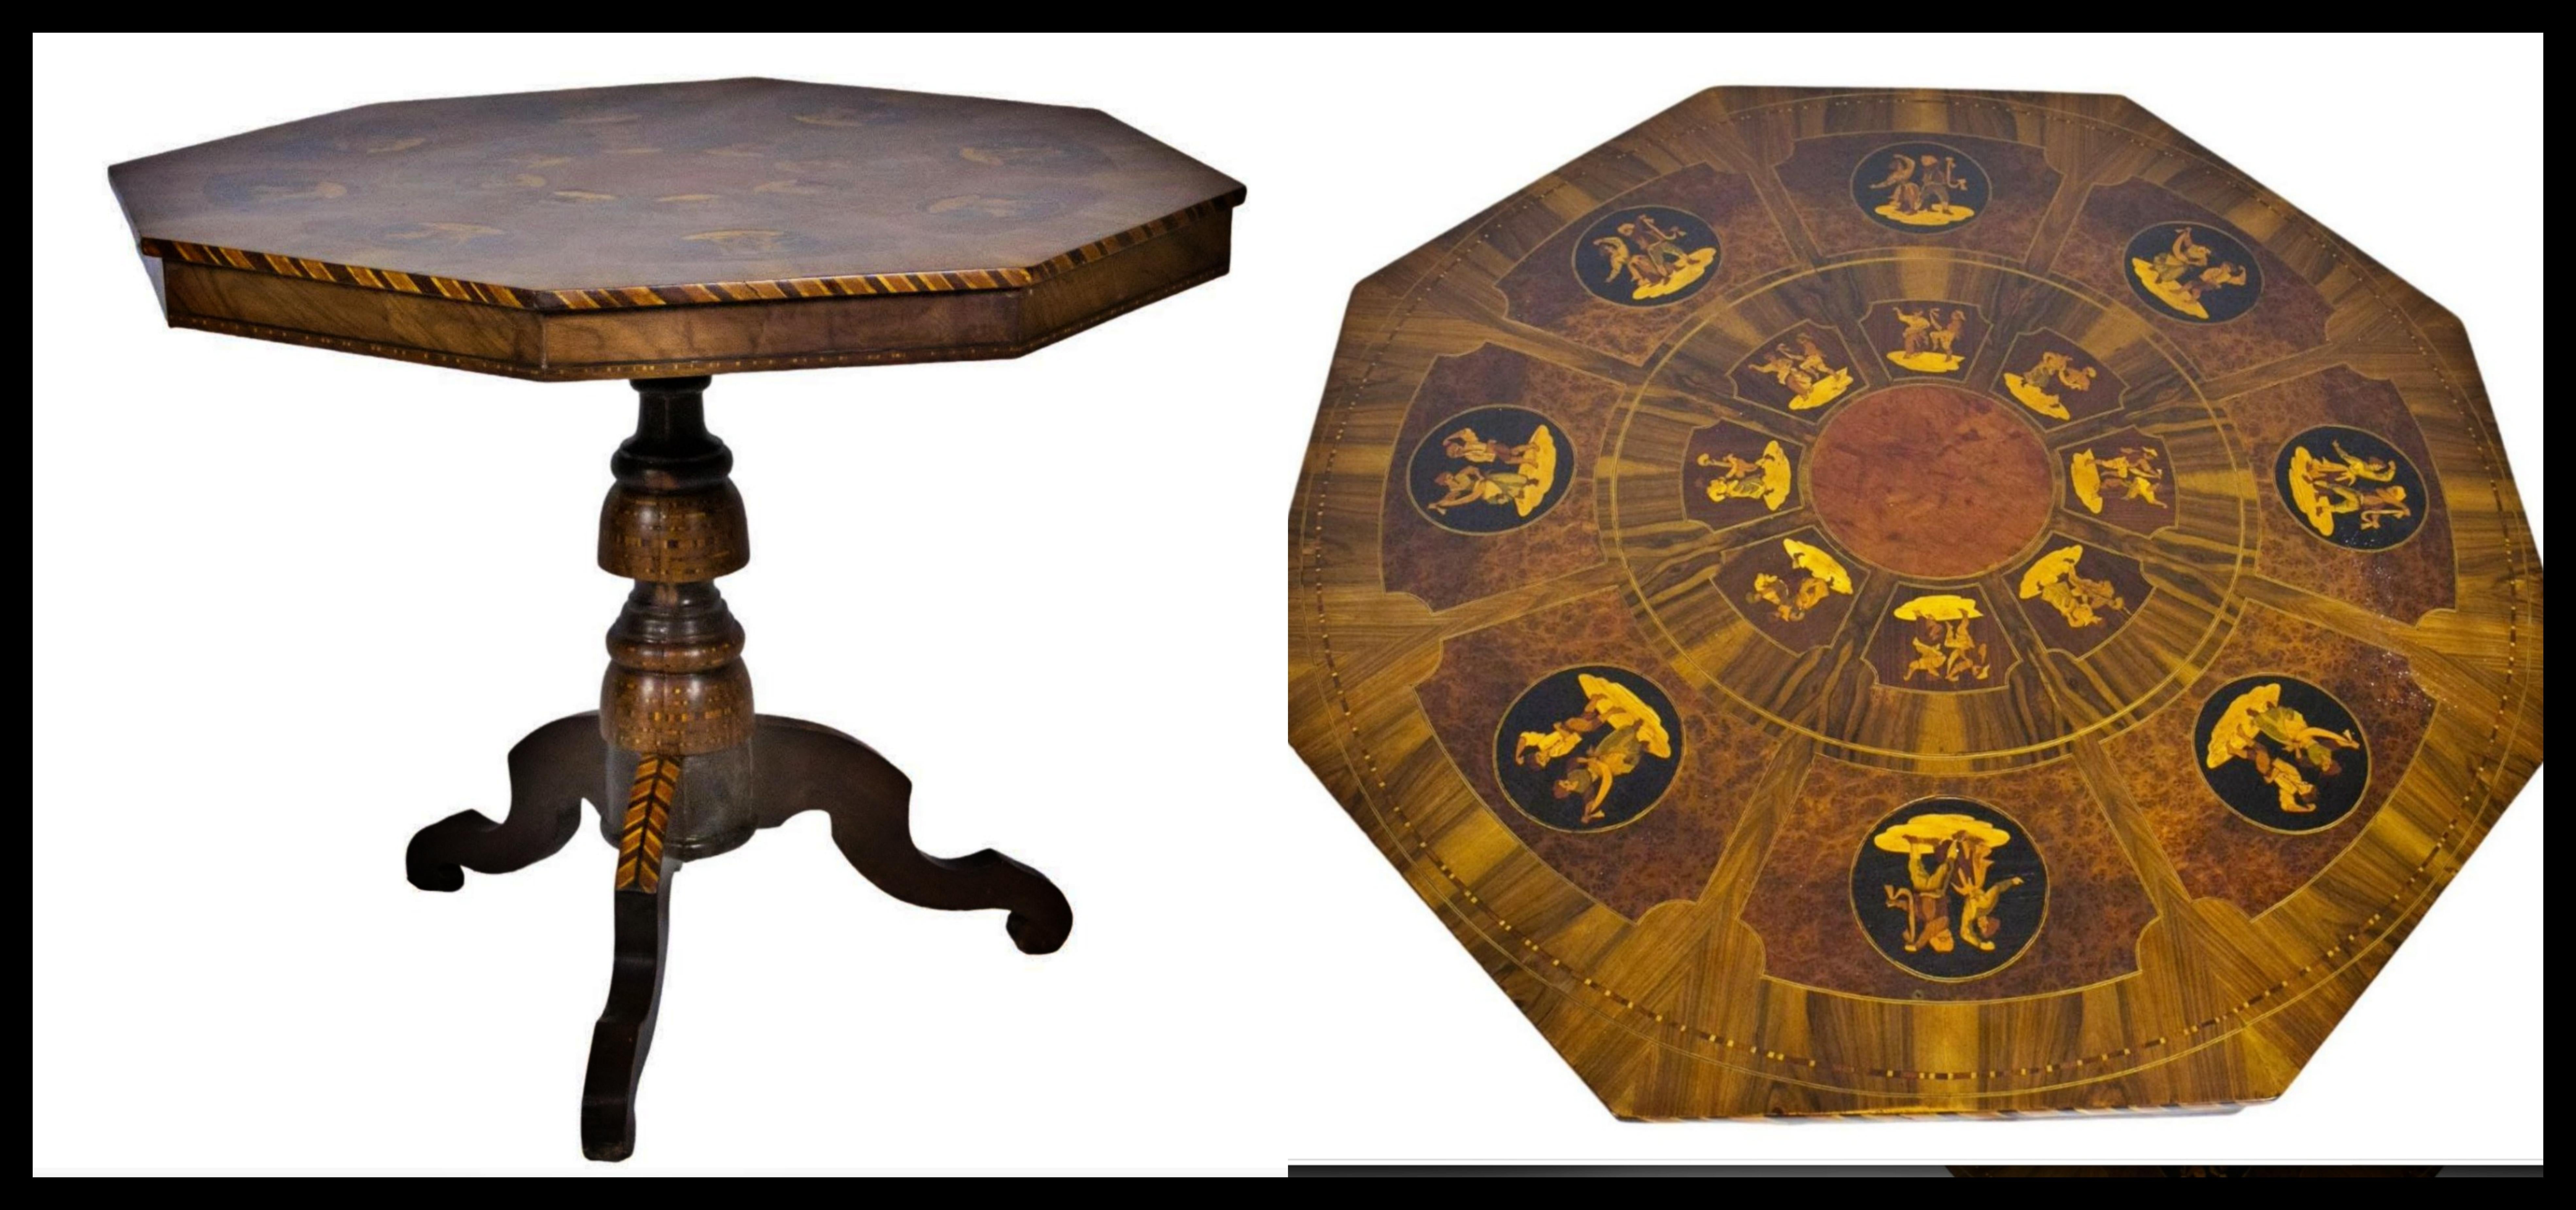 IMPORTANTE TABLE SORRENTINO (Sorrento-Naples) 19ème siècle

de forme octogonale, incrusté de diverses essences, décoré d'incrustations représentant des danseurs en costume traditionnel à l'intérieur de réserves rondes, le centre présente de